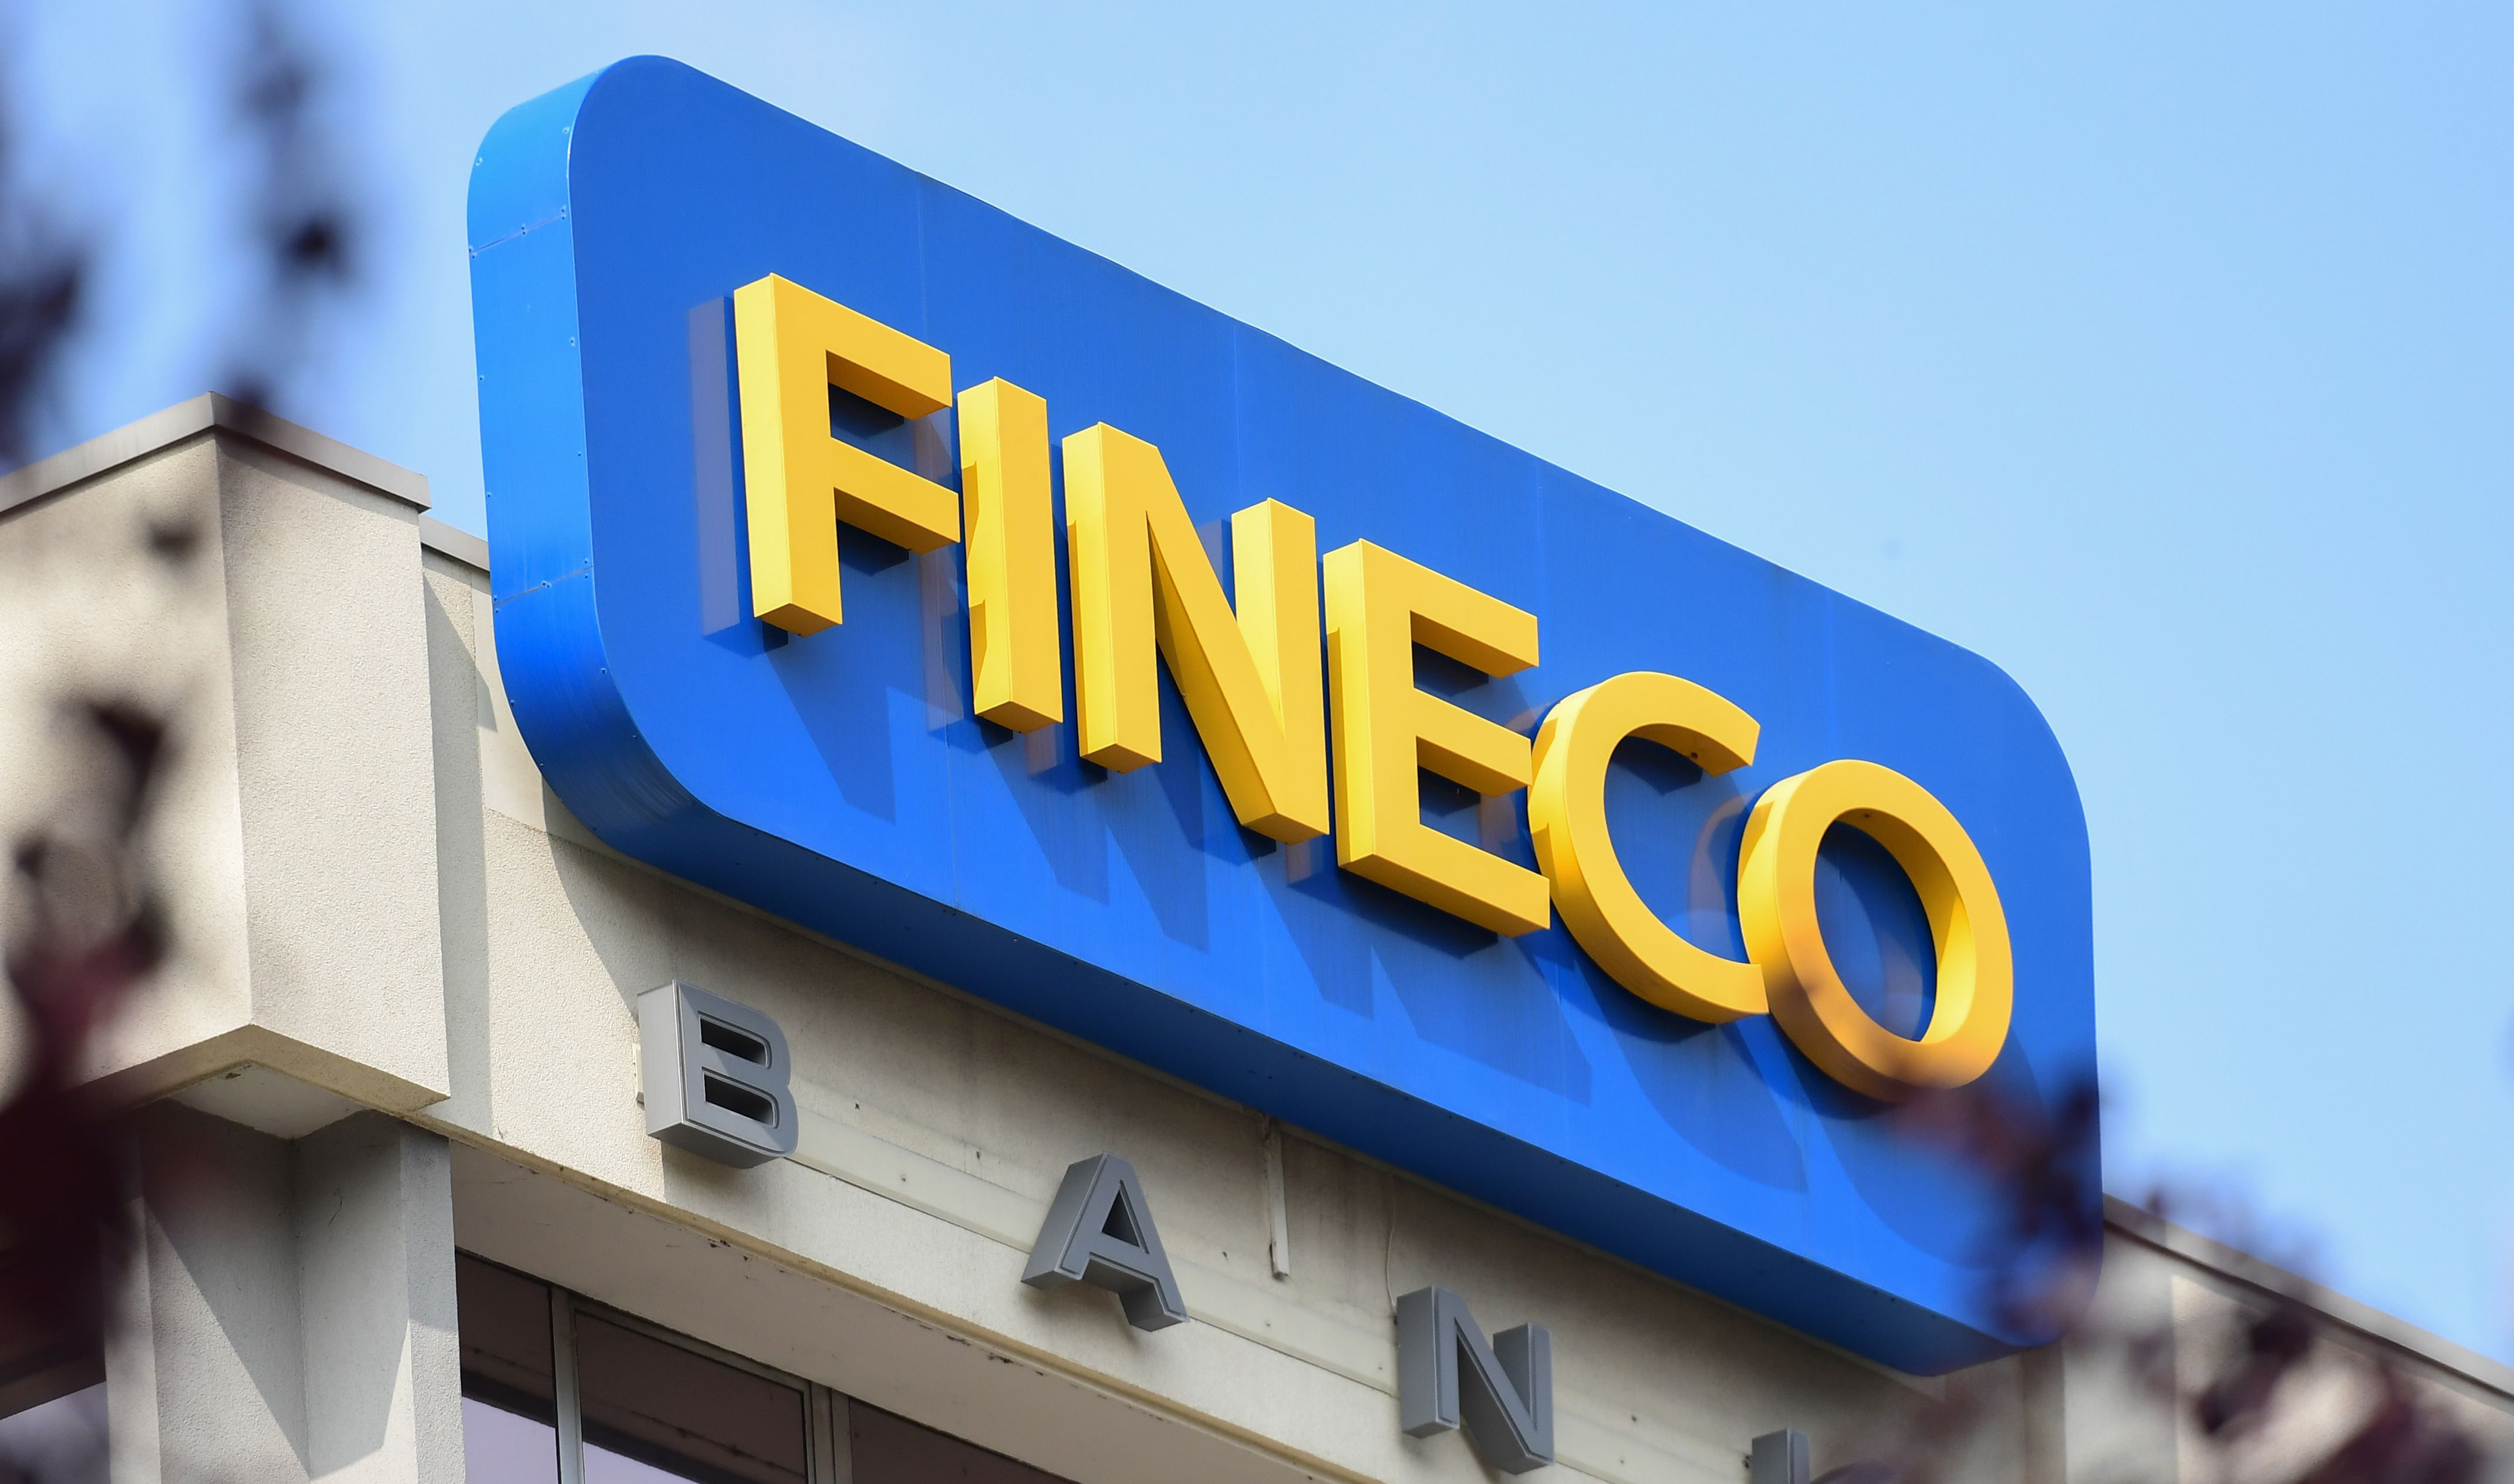 financialounge -  Alessandro Foti finanza Fineco Fineco Asset Management